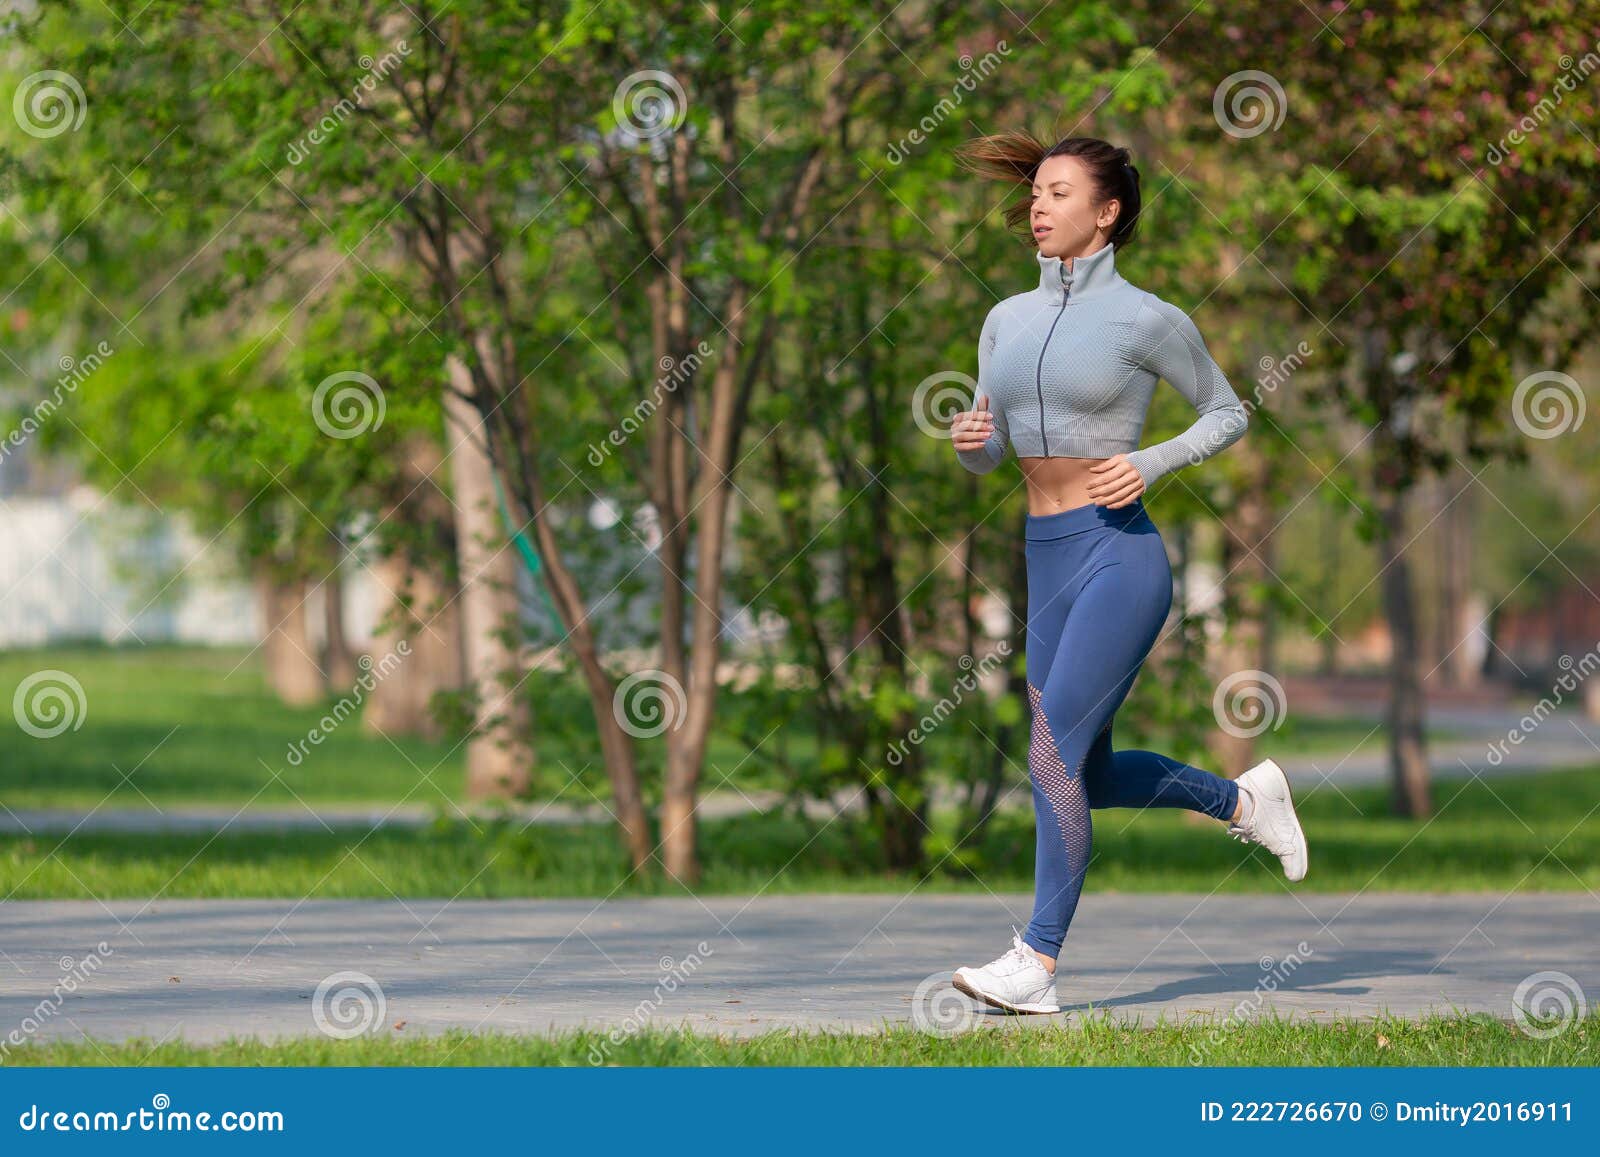 https://thumbs.dreamstime.com/z/foto-de-una-mujer-corriendo-en-el-parque-temprano-la-ma%C3%B1ana-atractiva-que-se-mantiene-forma-y-saludable-estilo-vida-concepto-un-222726670.jpg